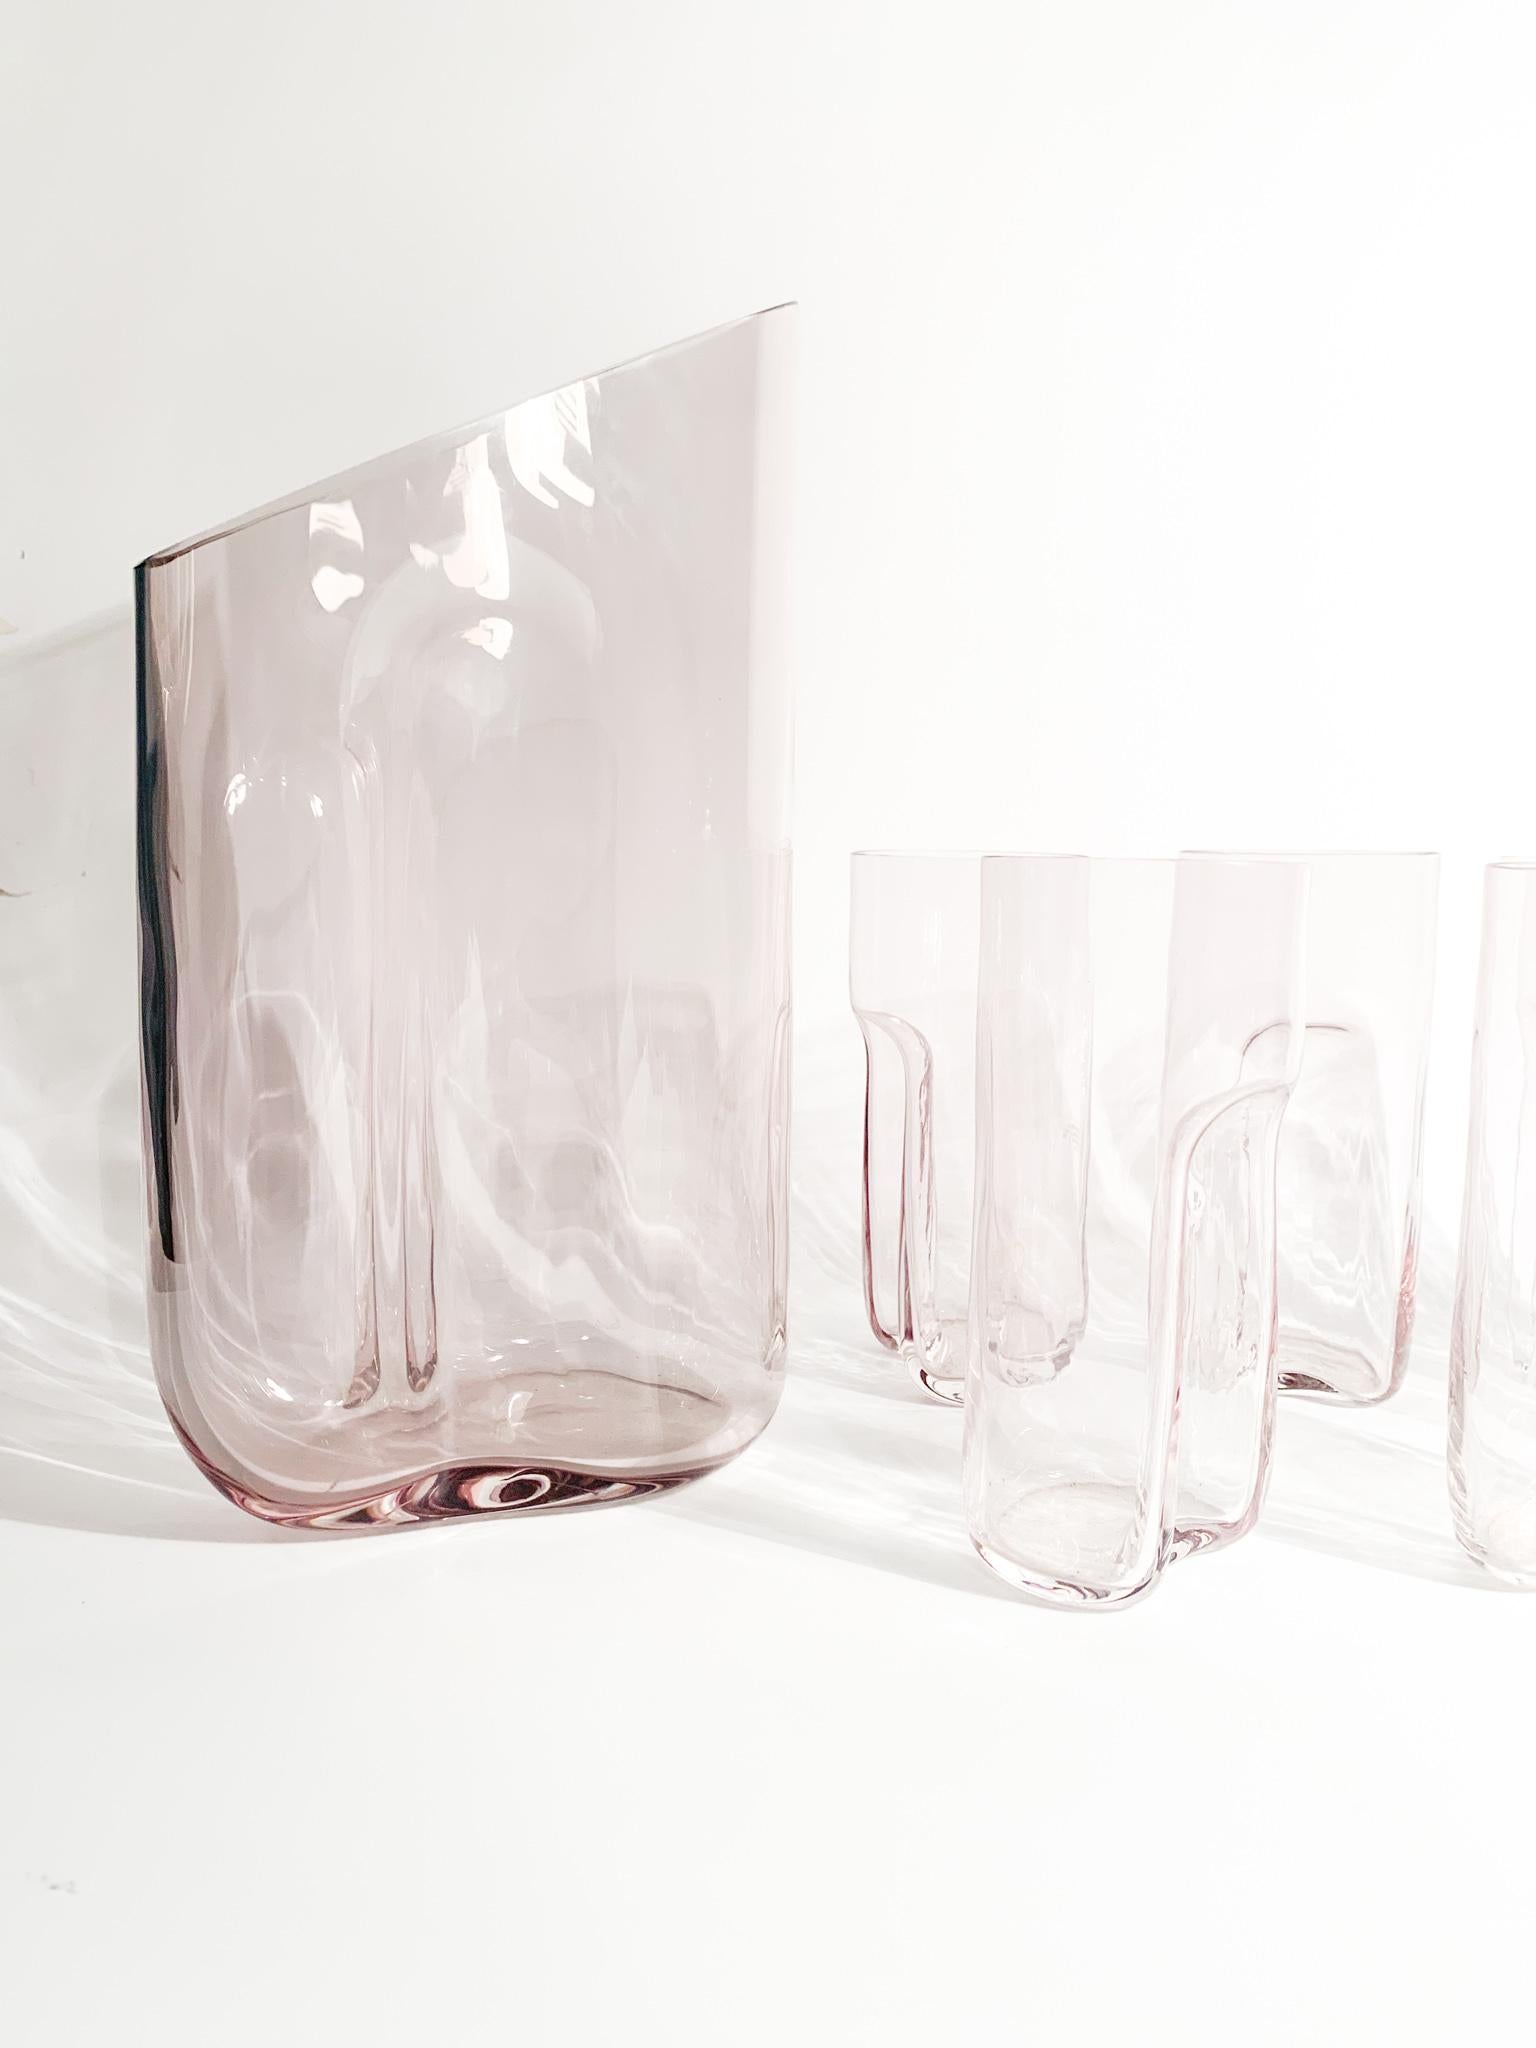 Set aus 6 Gläsern mit rosa Murano-Glaskaraffe, hergestellt von Gino Cenedese und Maurizio Albarelli in den 1970er Jahren

Karaffe - Ø 15 cm h 27 cm

Gläser - Ø 6 cm h 14 cm

Simone Cenedese stellt seit 1946 in der Glasfabrik, die seinen Namen trägt,